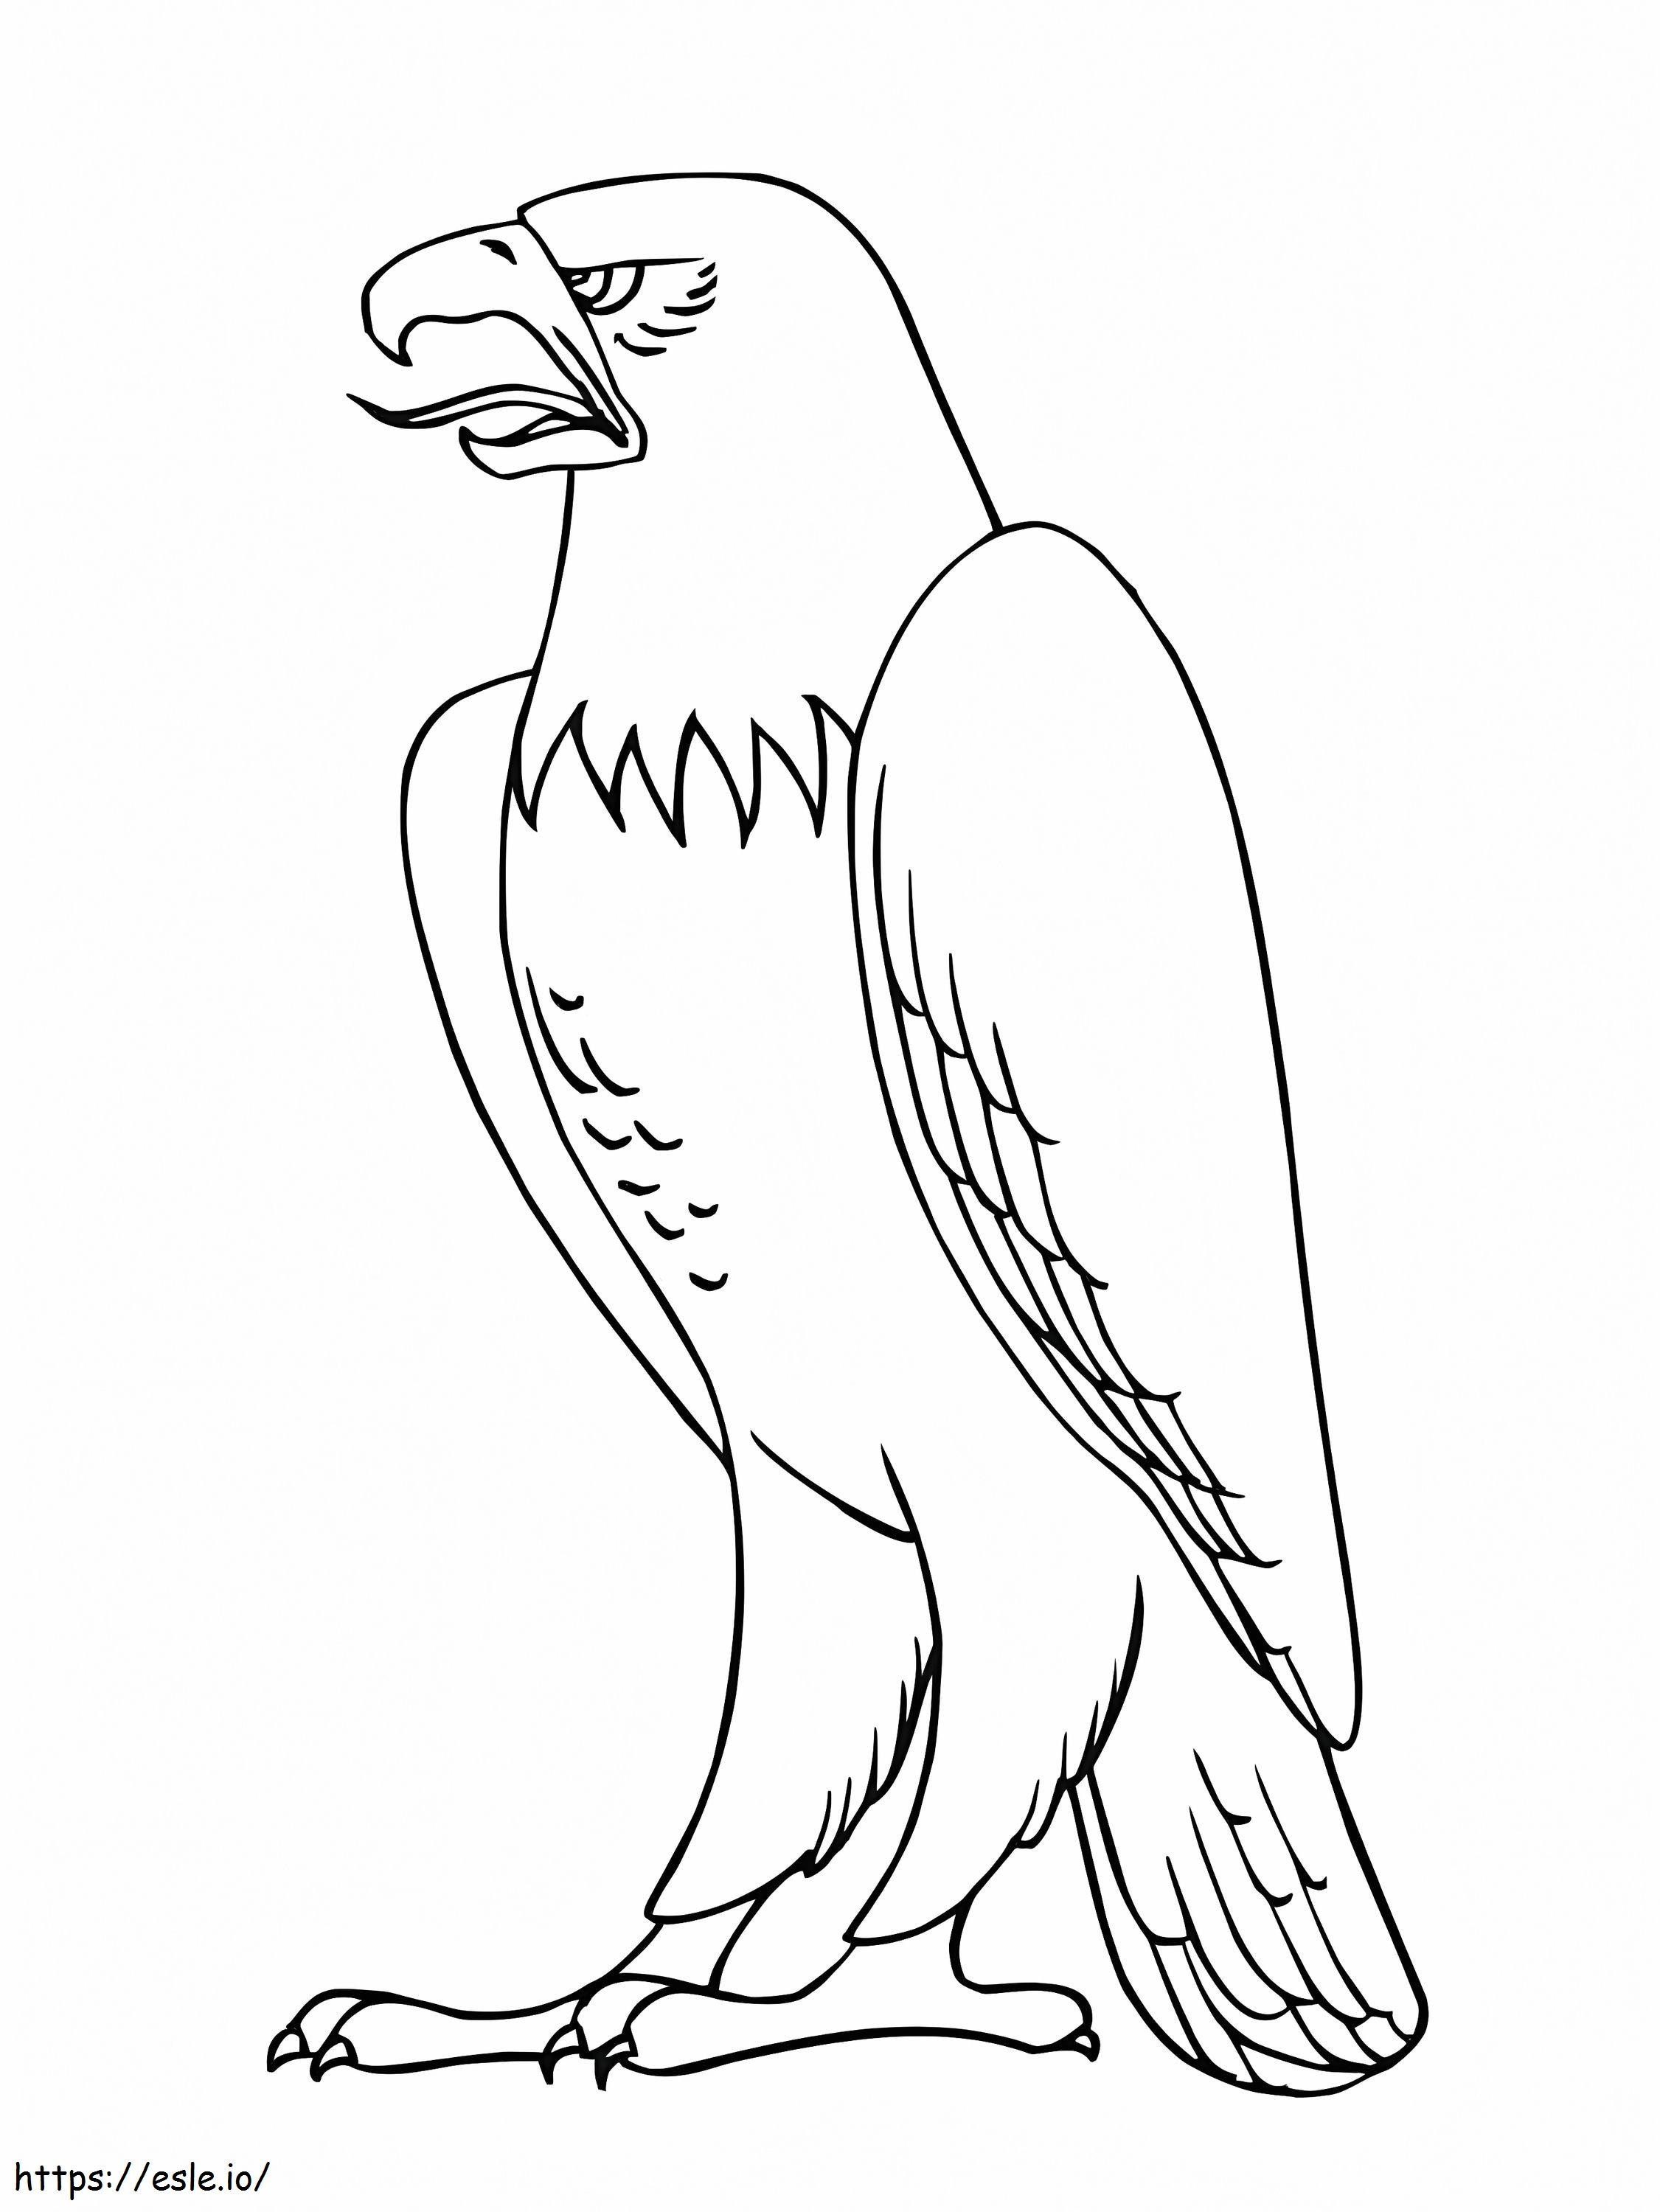 Aquila calva arrabbiata da colorare